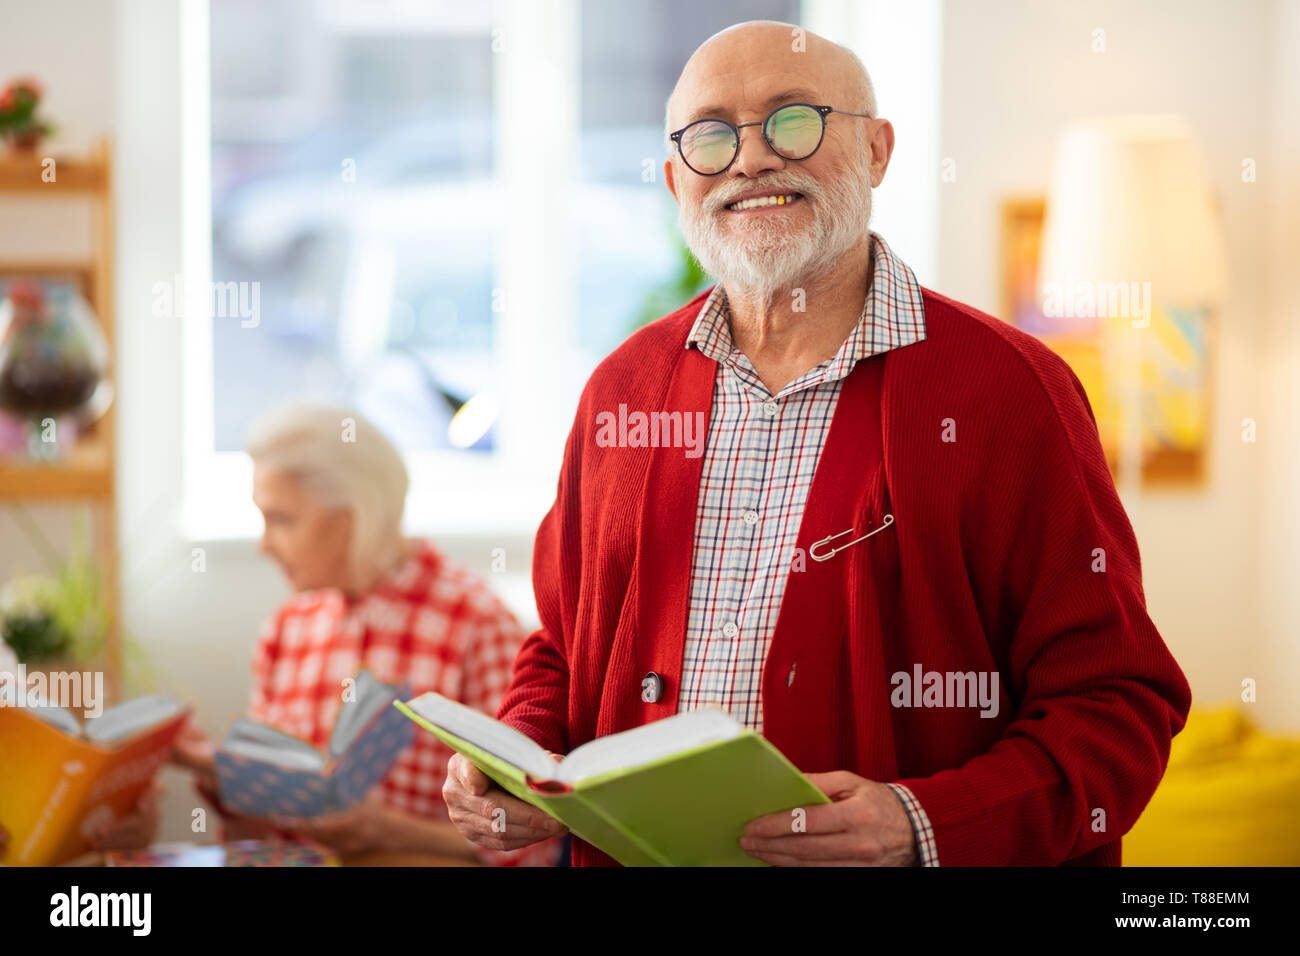 Heureux joyeux de homme debout avec un livre Banque D'Images